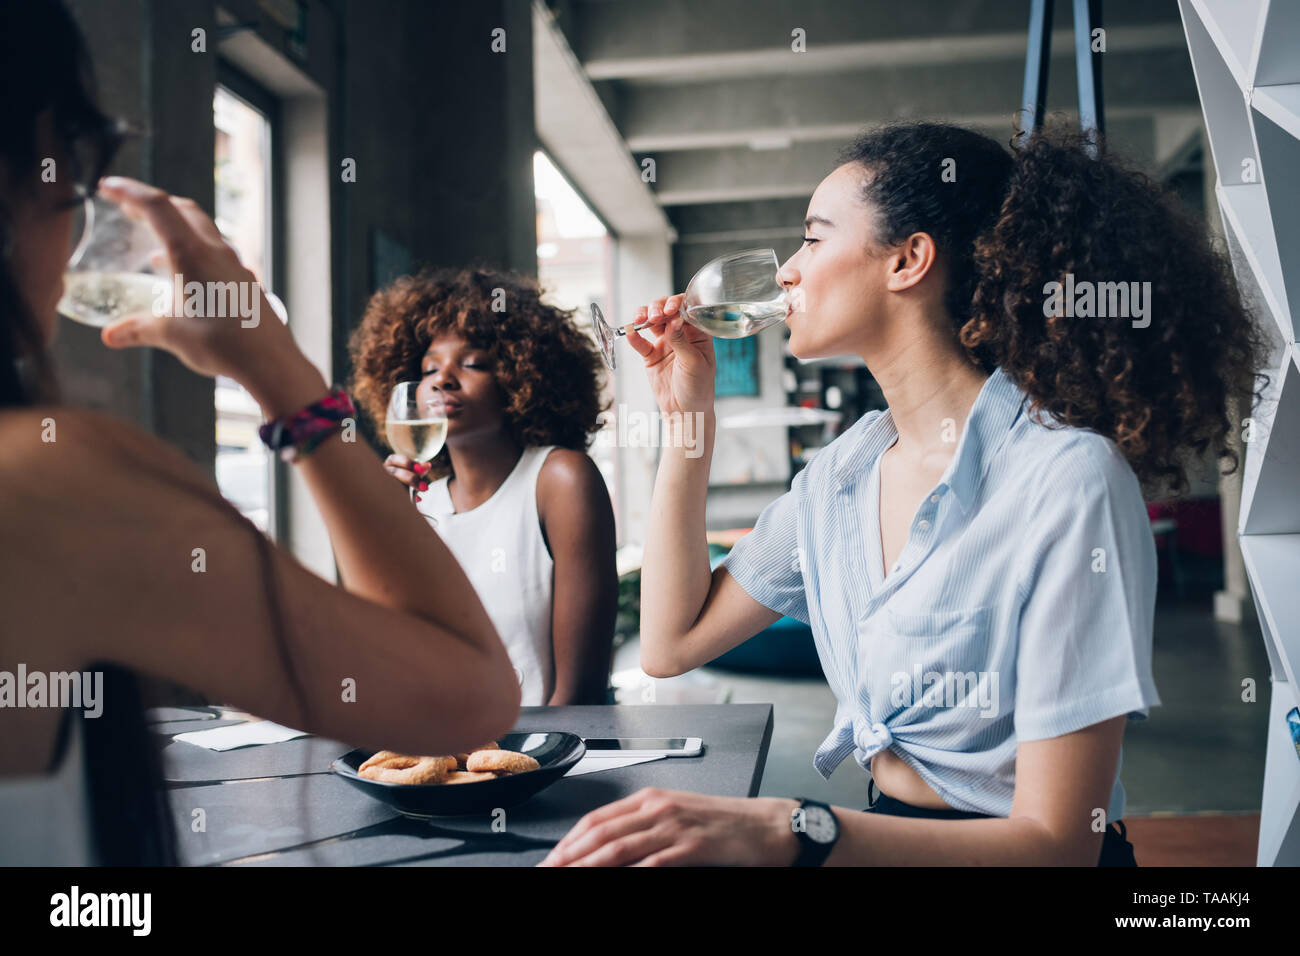 Jóvenes mujeres multirraciales sentado en un moderno restaurante bebiendo juntos vino - amistad, alegre, comunicación Foto de stock